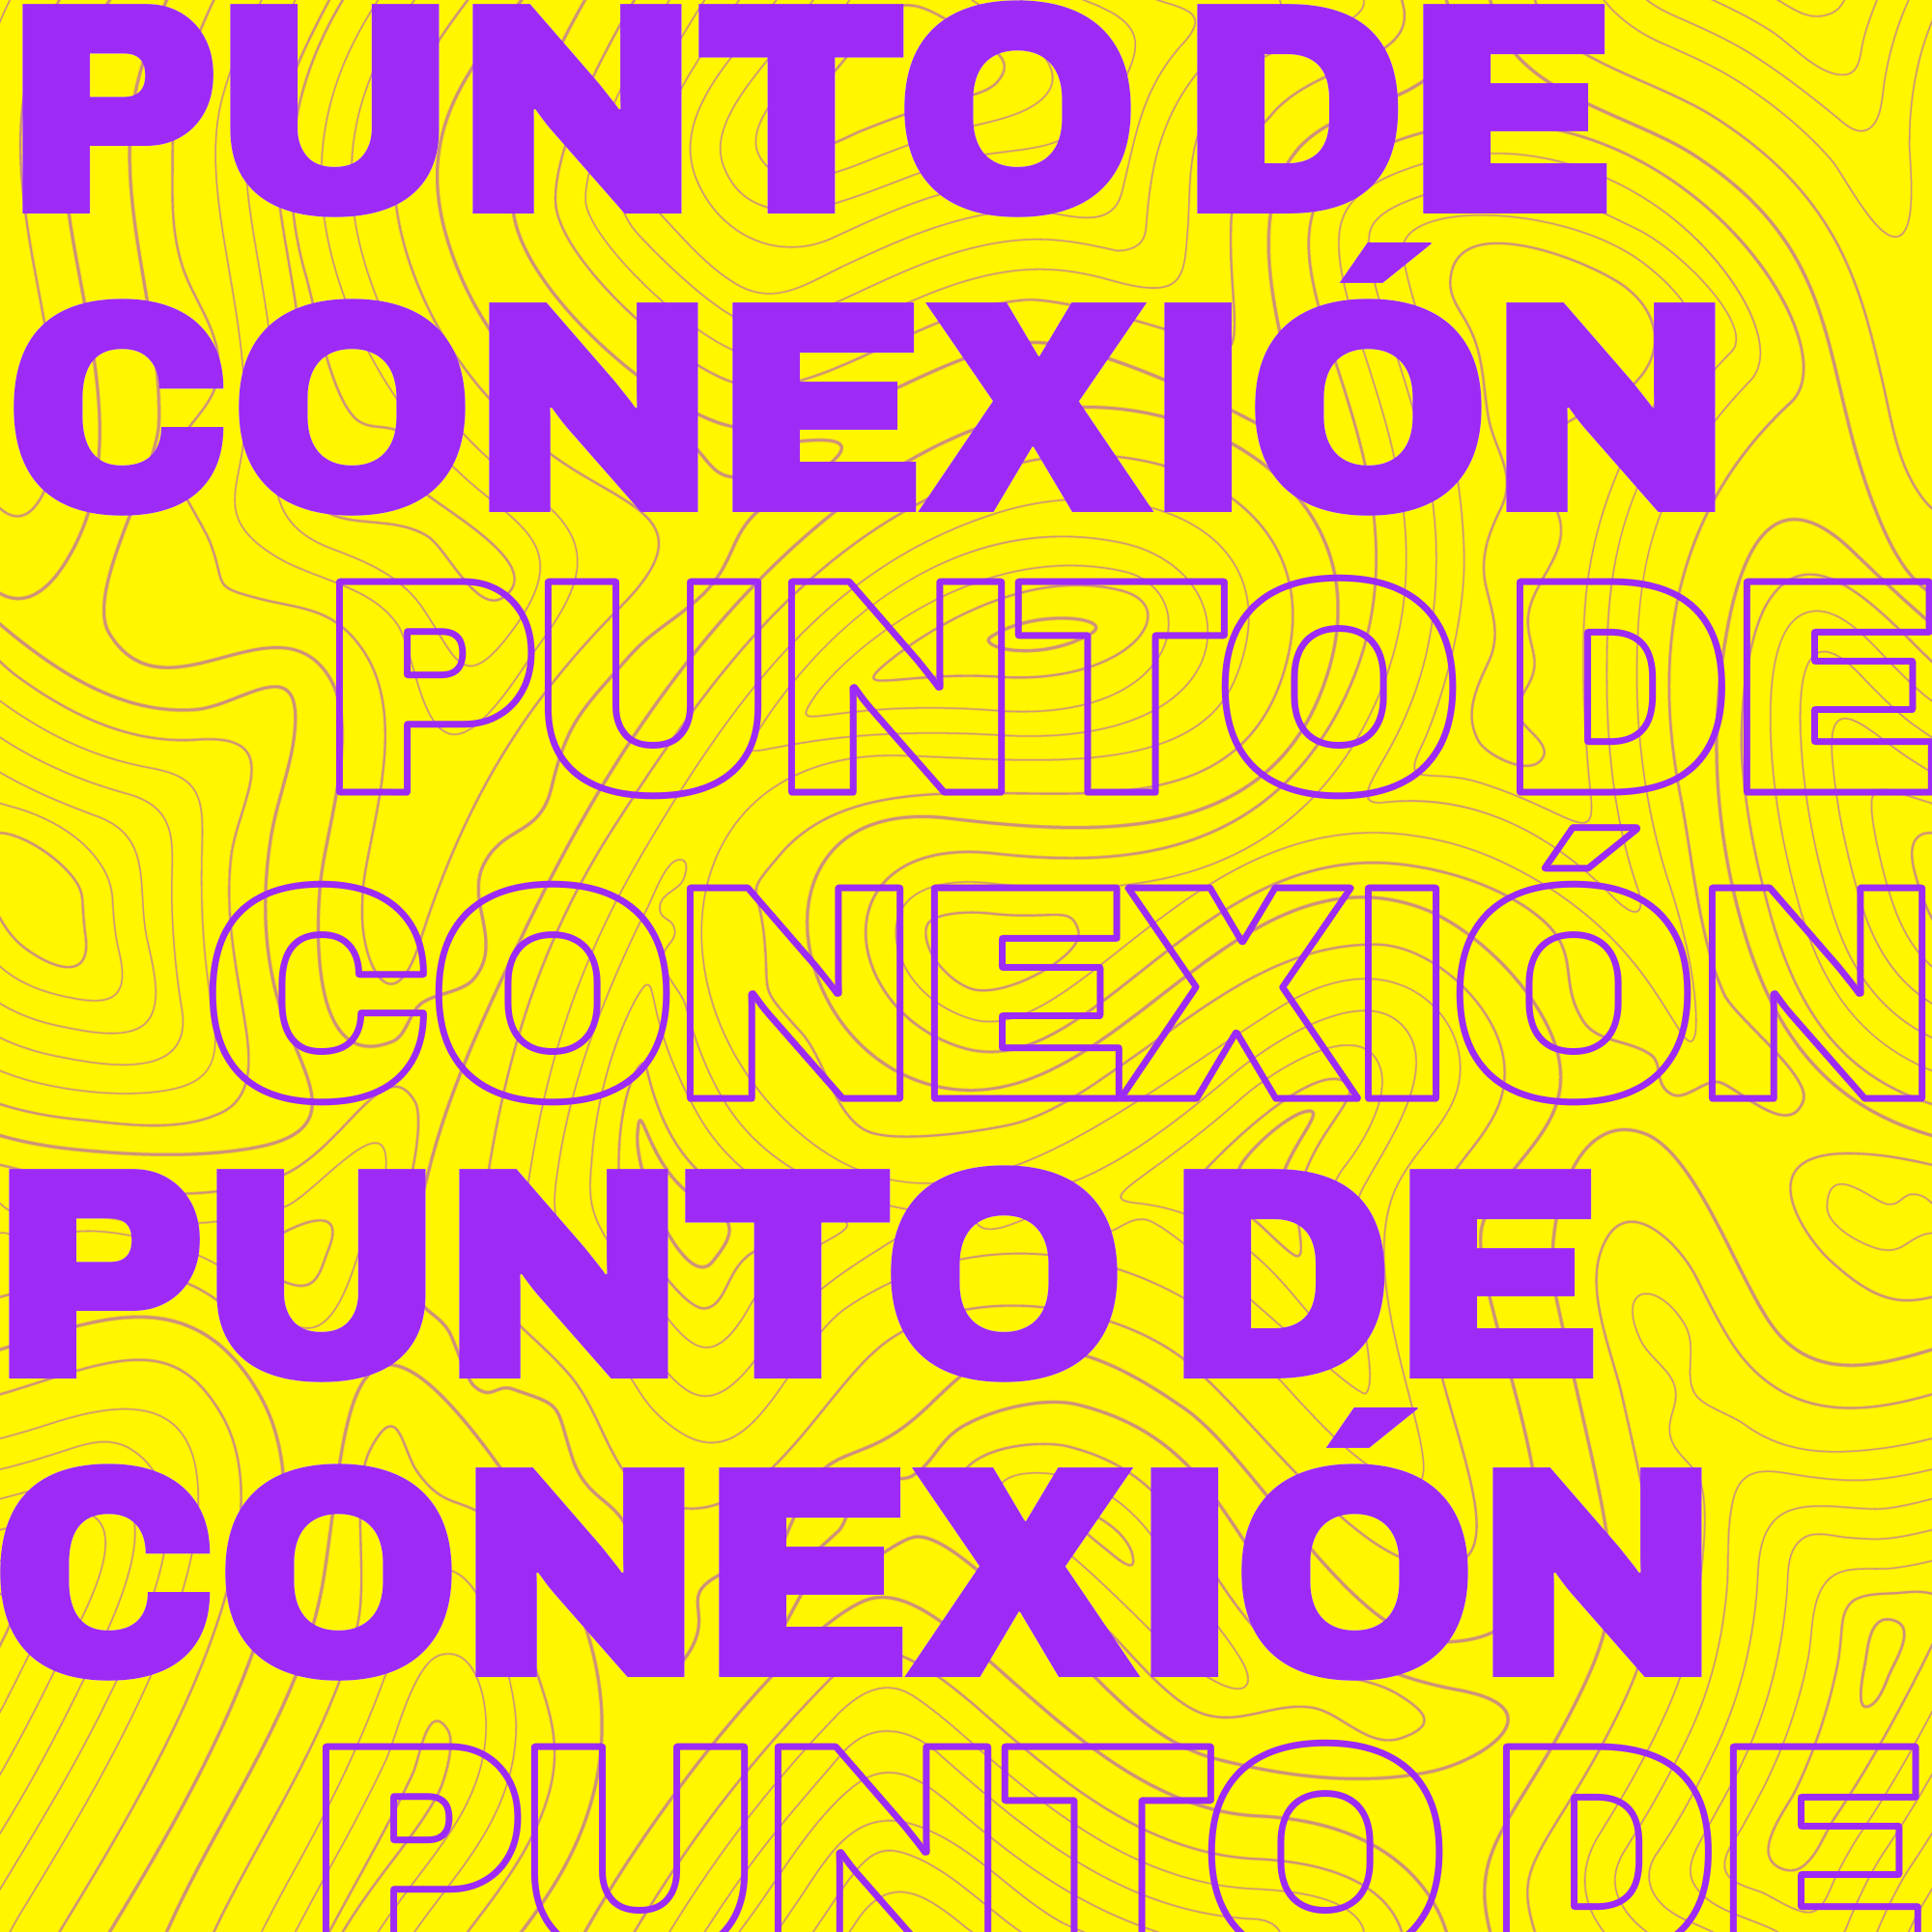 PUNTO DE CONEXIONSPOTIFY